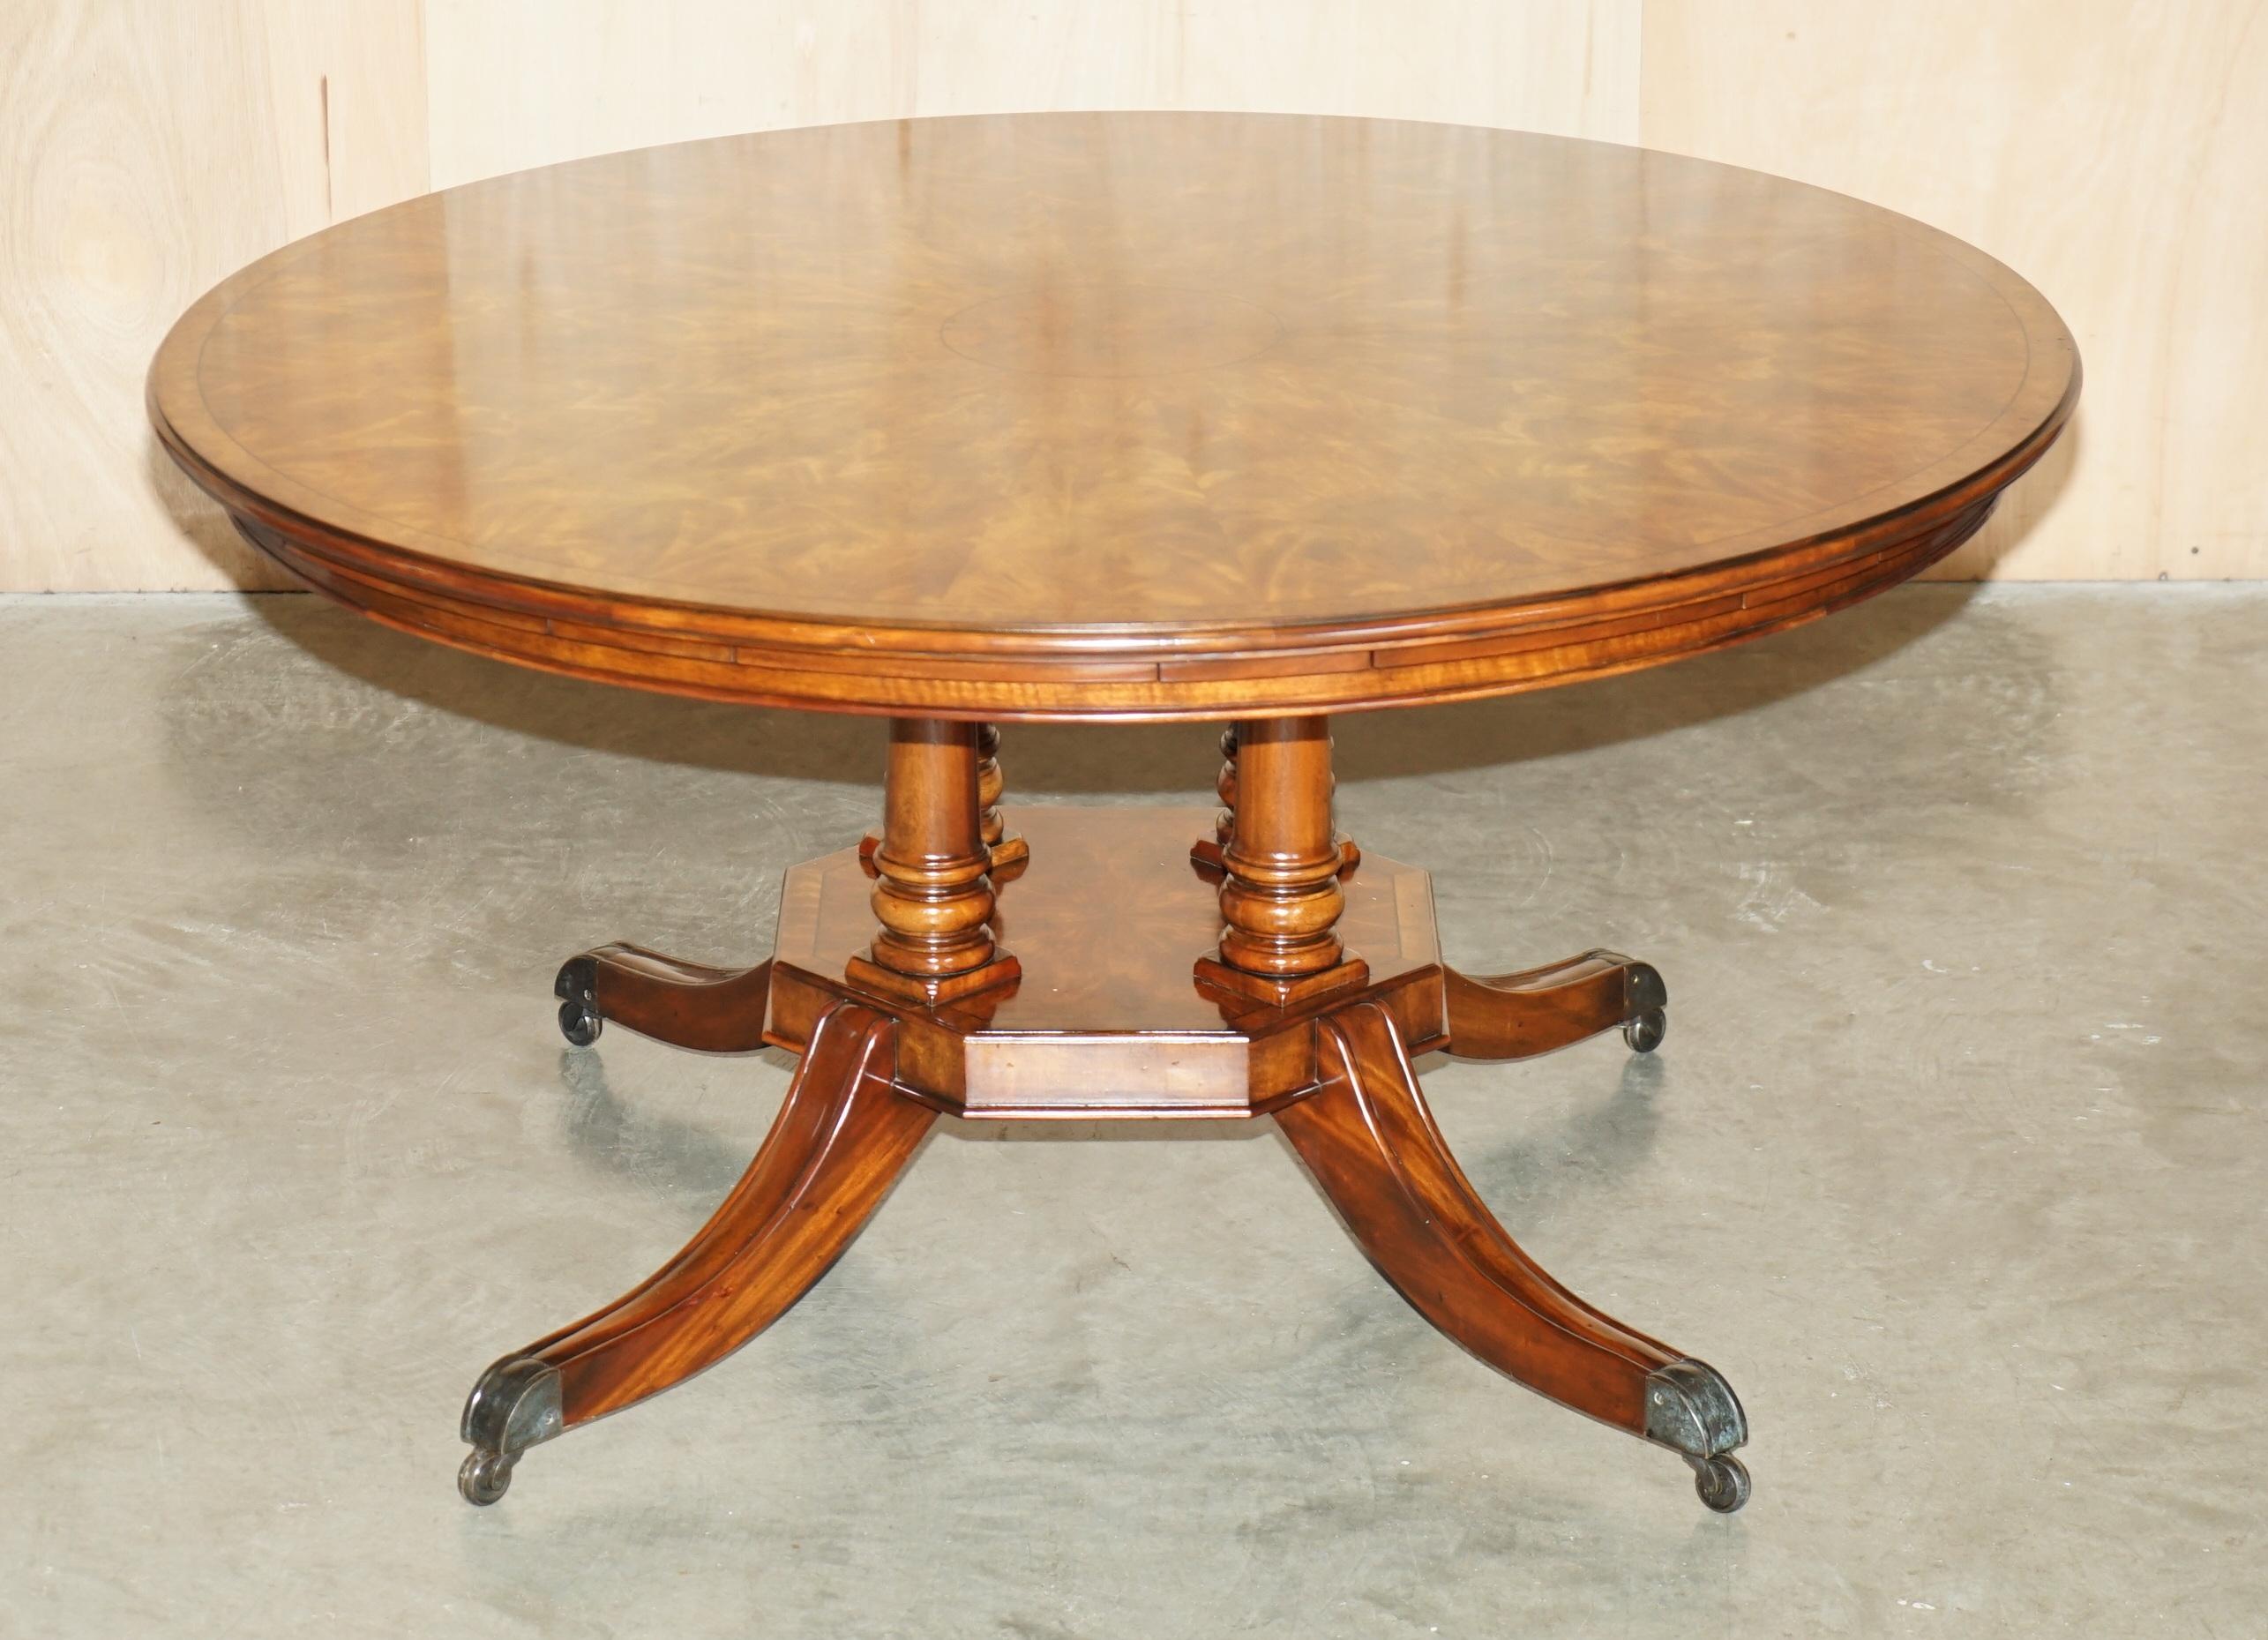 Royal House Antiques

Royal House Antiques a le plaisir d'offrir à la vente cette superbe table ronde à rallonge Theodore Alexander en noyer, ronce de noyer et acajou flammé, d'un prix de vente de £23,800. 

Veuillez noter que les frais de livraison